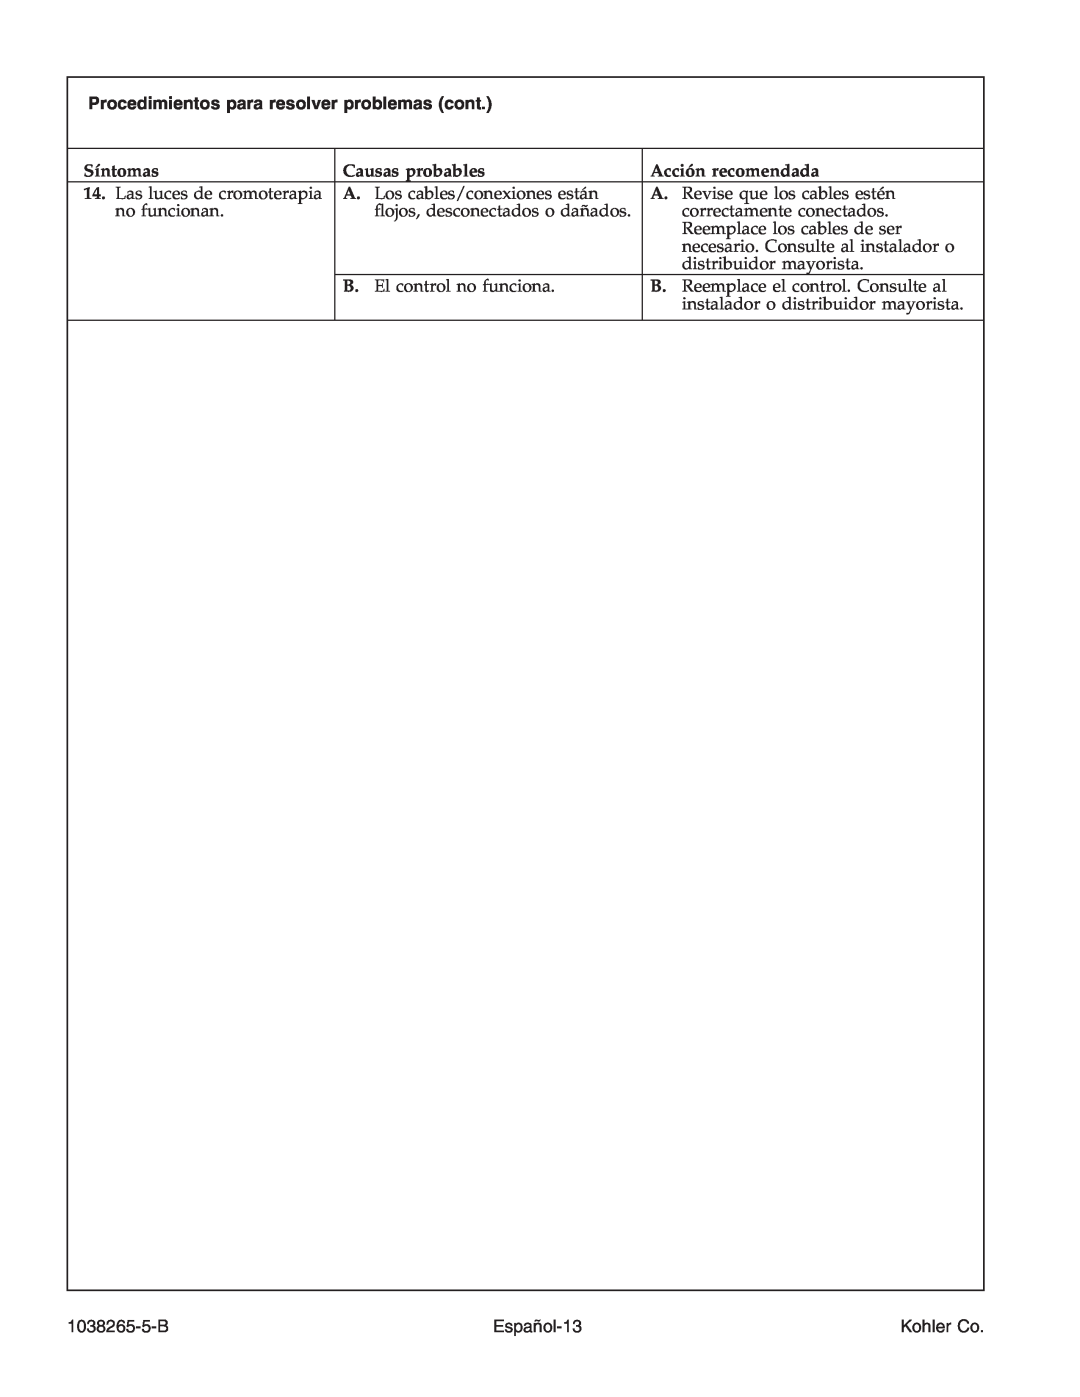 Kohler K-1375 manual Procedimientos para resolver problemas cont, 1038265-5-B, Español-13, Kohler Co 